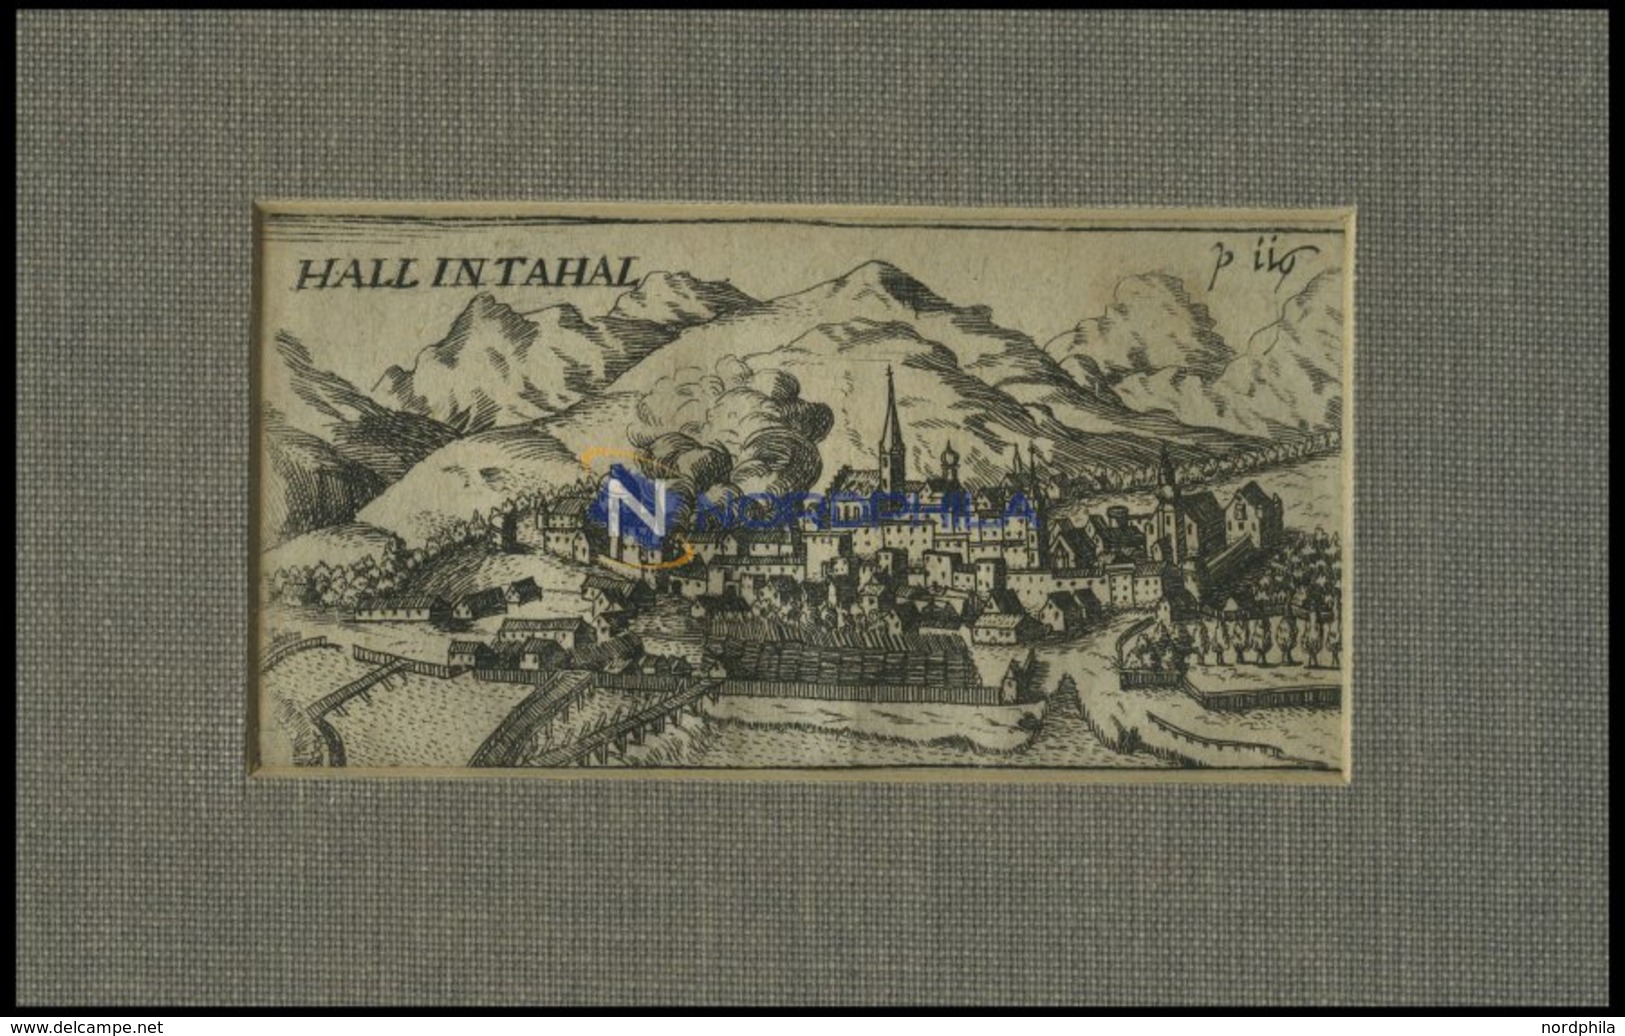 HALL, Gesamtansicht, Kupferstich Von Hoffmann Von 1685 - Lithographies